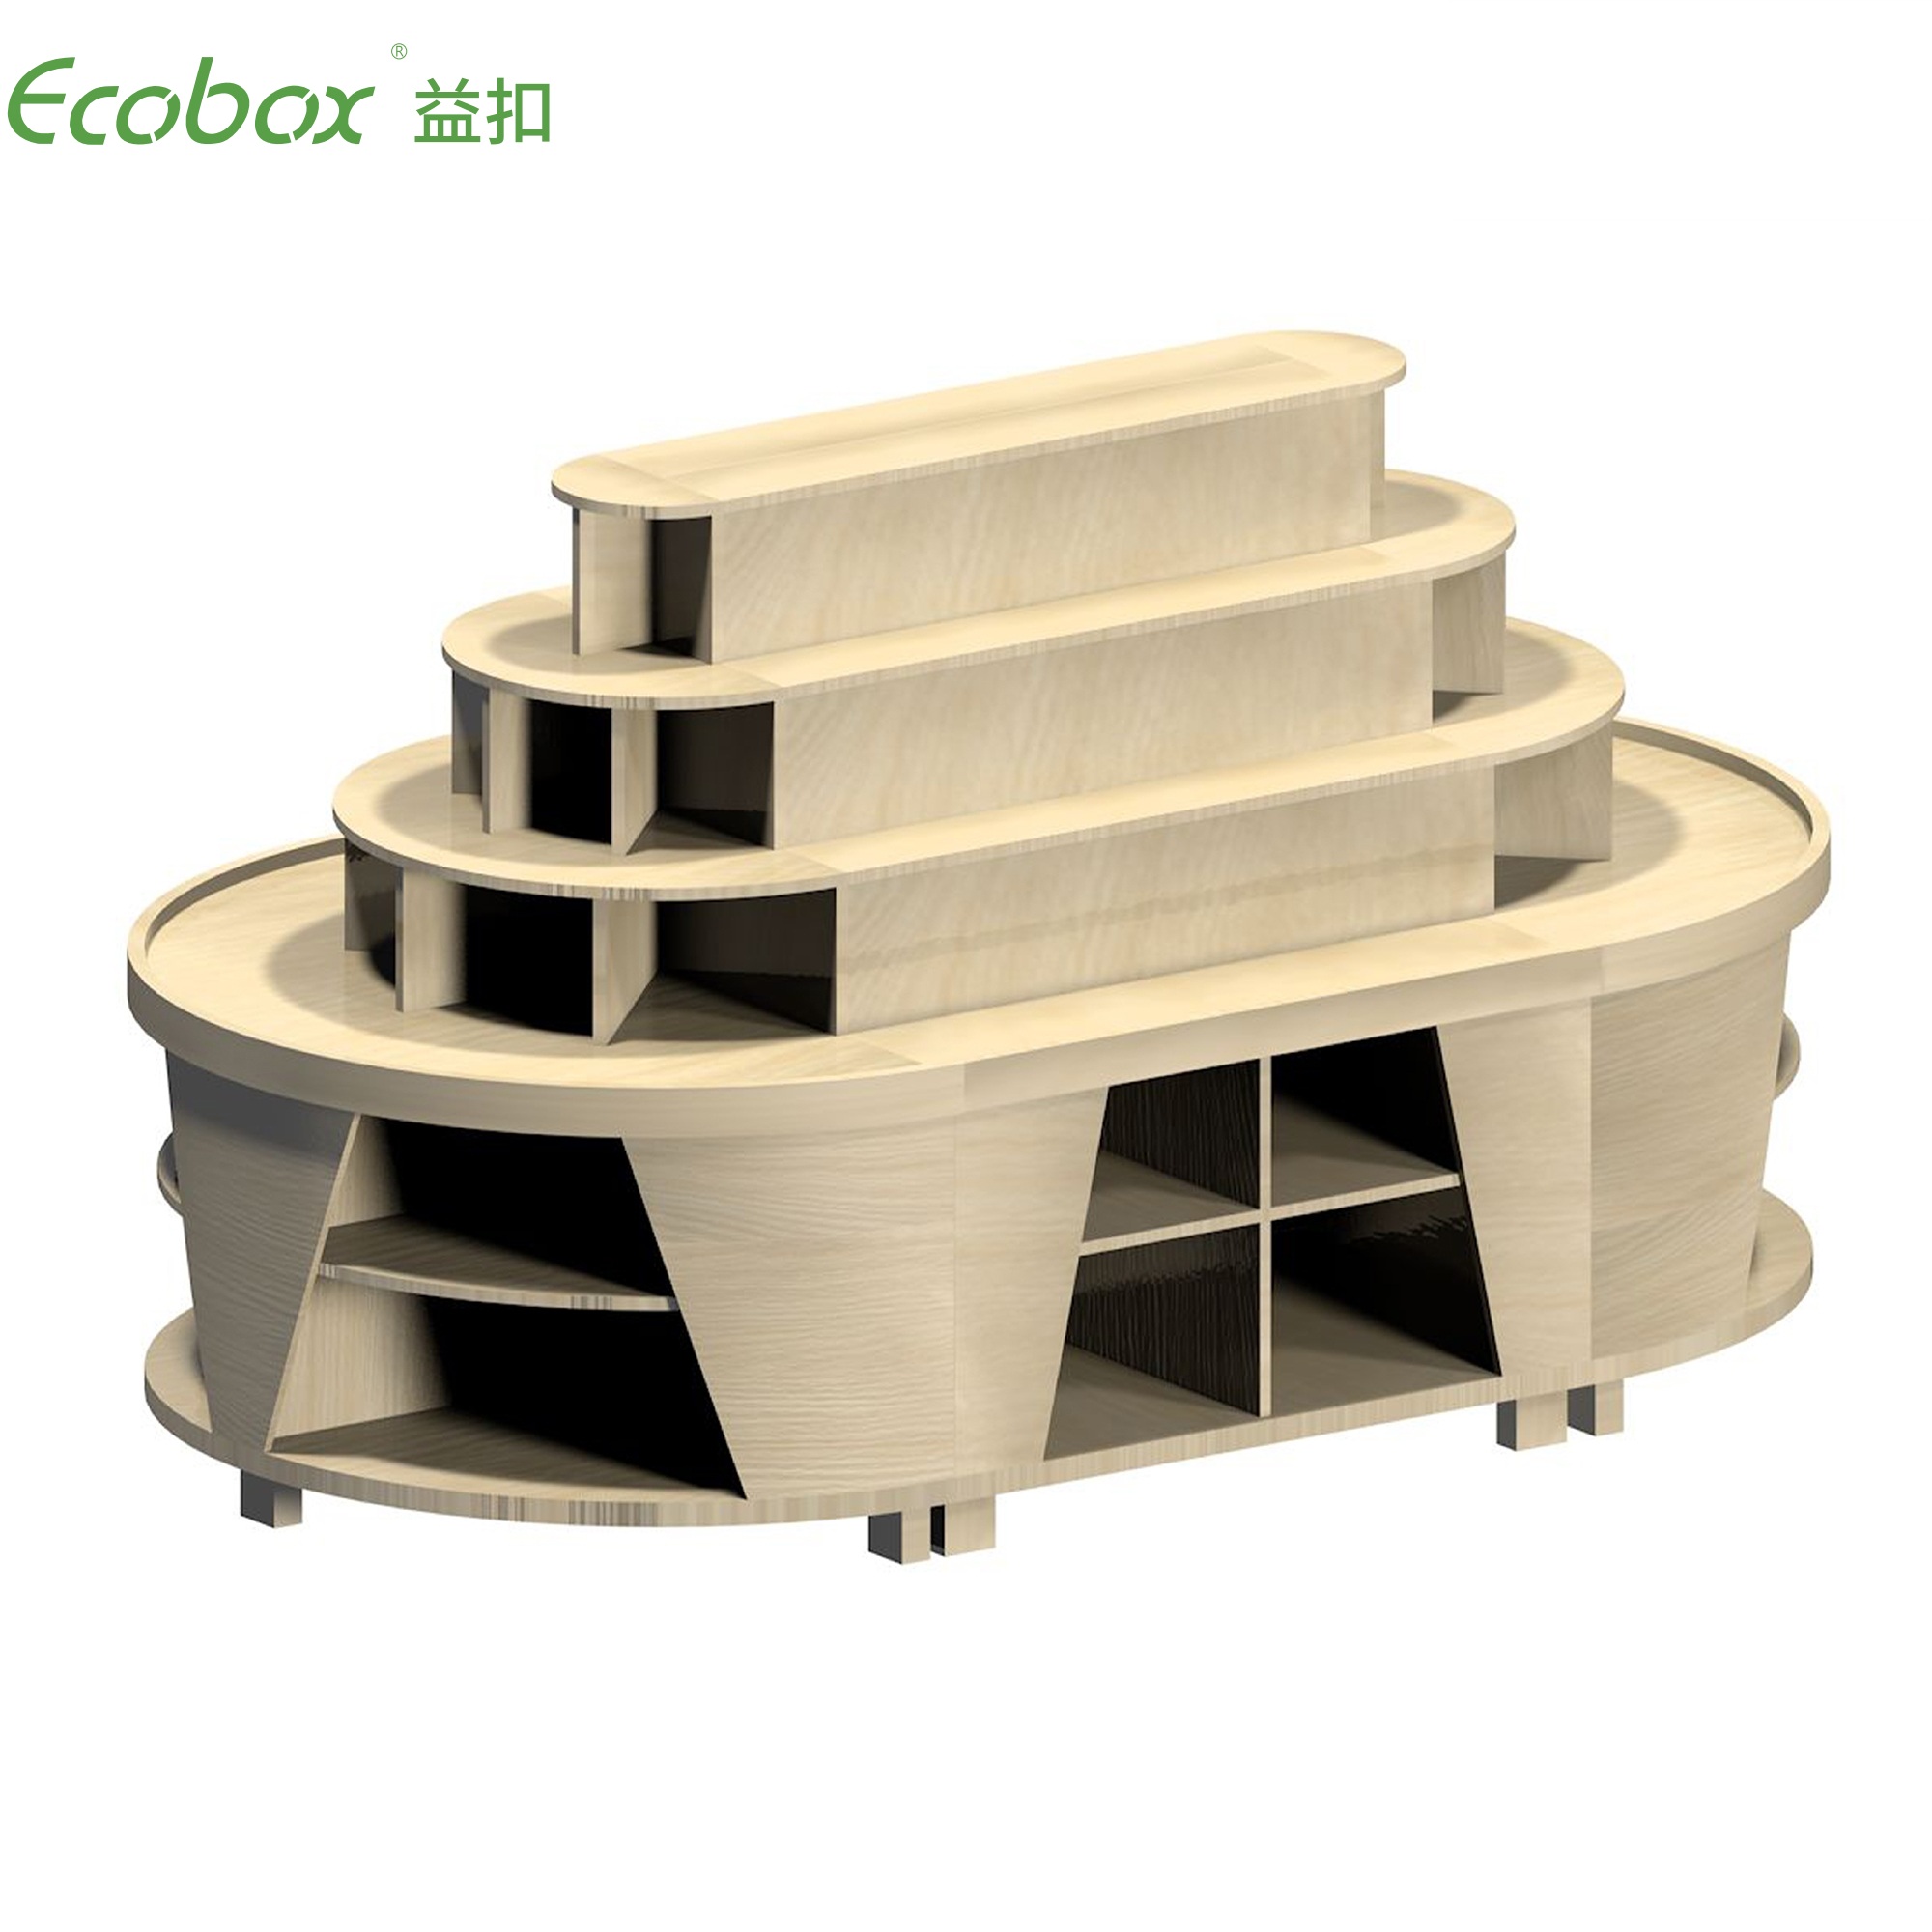 Ecobox G010 Supermarkt-Großlebensmitteldisplays mit Ecobox-Supermarktbehältern